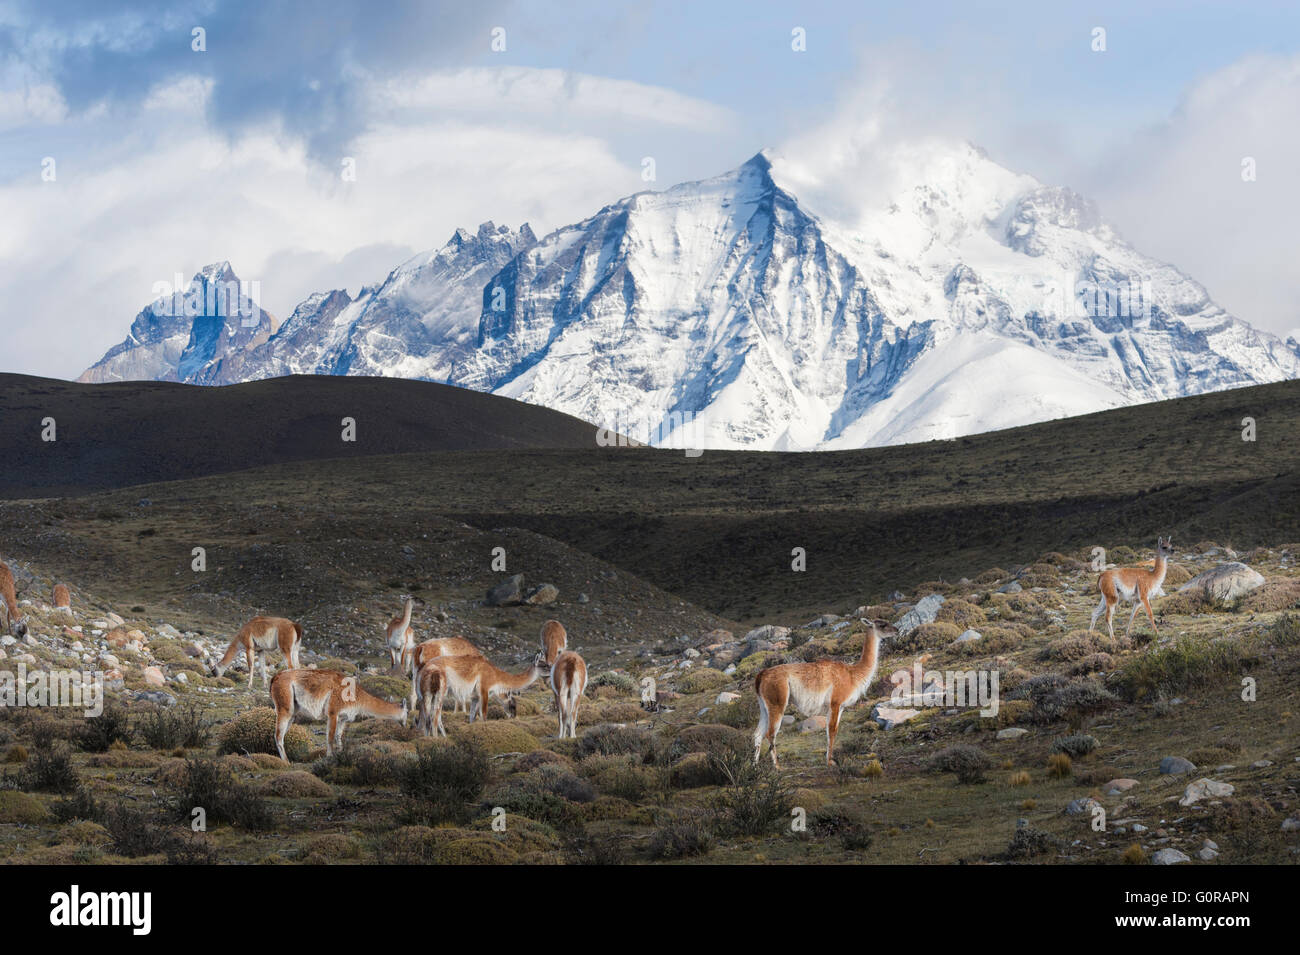 Guanacos (Lama guanicoe) sur une crête en face de montagnes couvertes de neige, Parc National Torres del Paine, Patagonie chilienne, Chili Banque D'Images